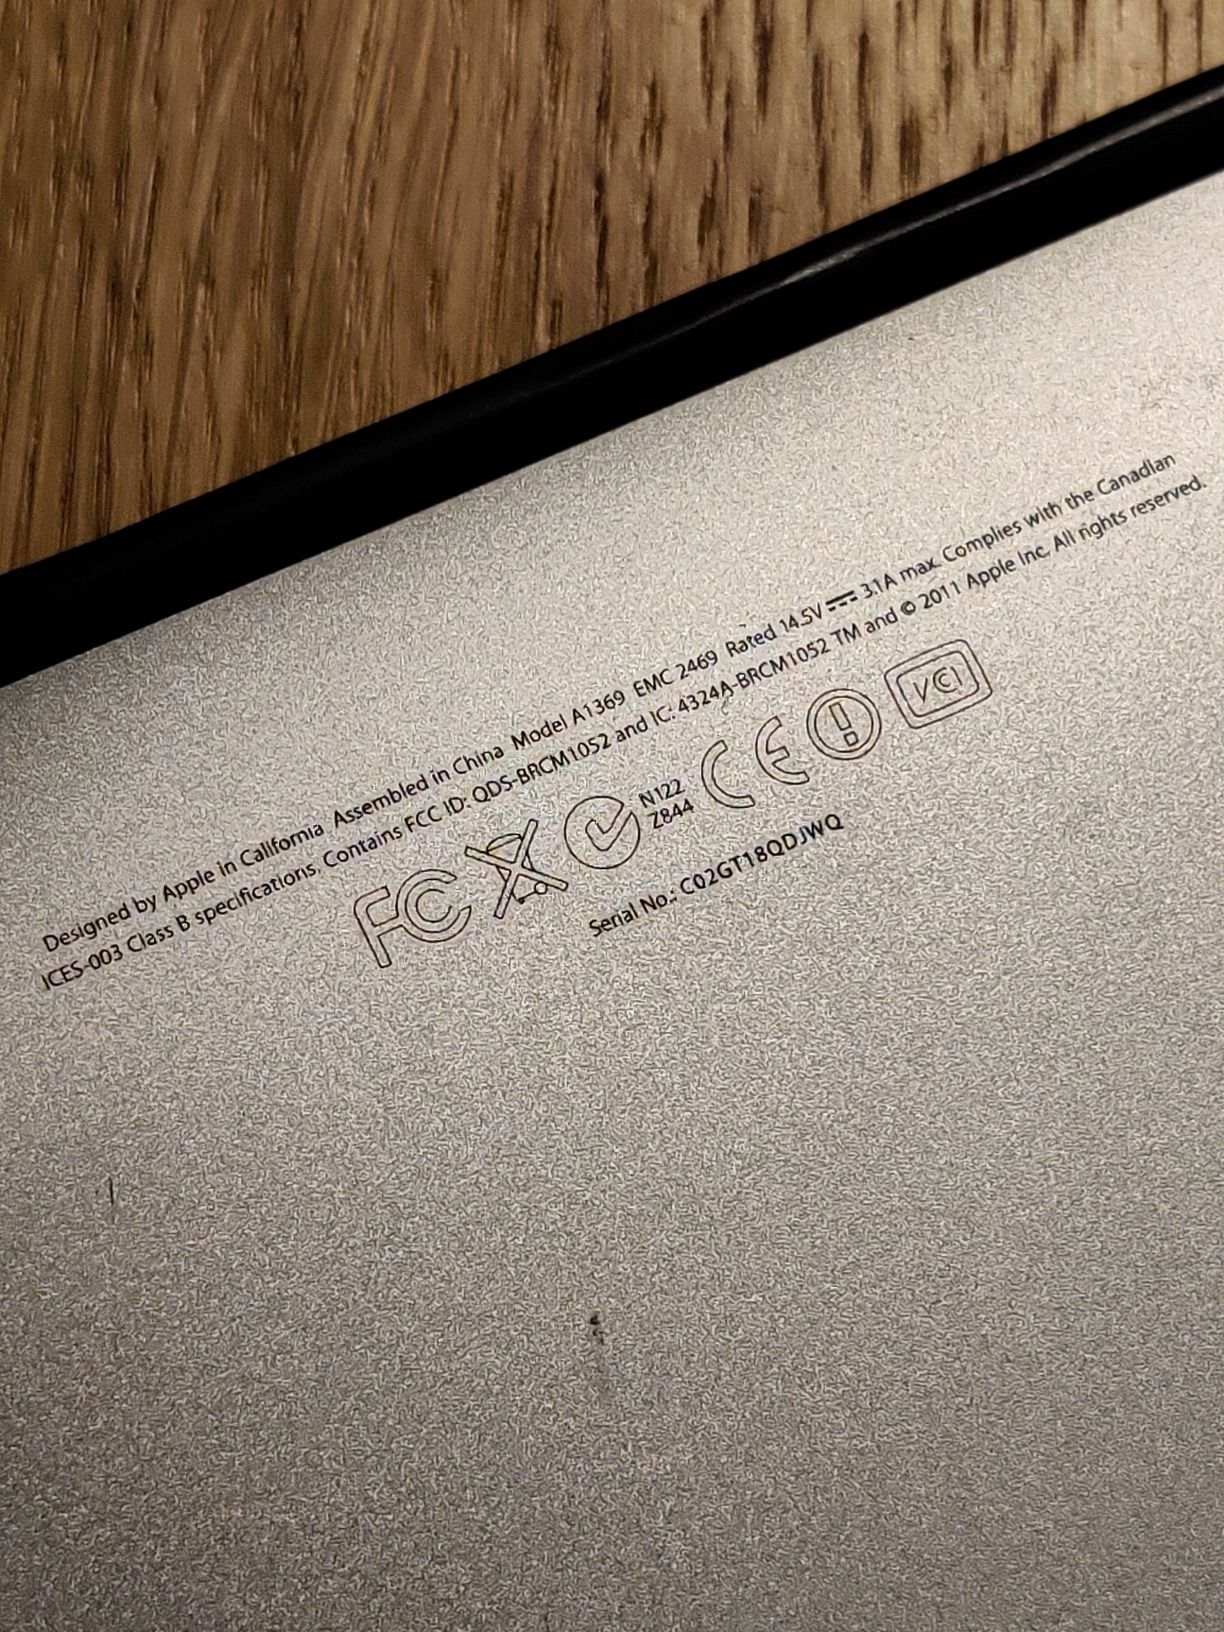 Apple MacBook Air A1369 Mid 2011, nowa bateria